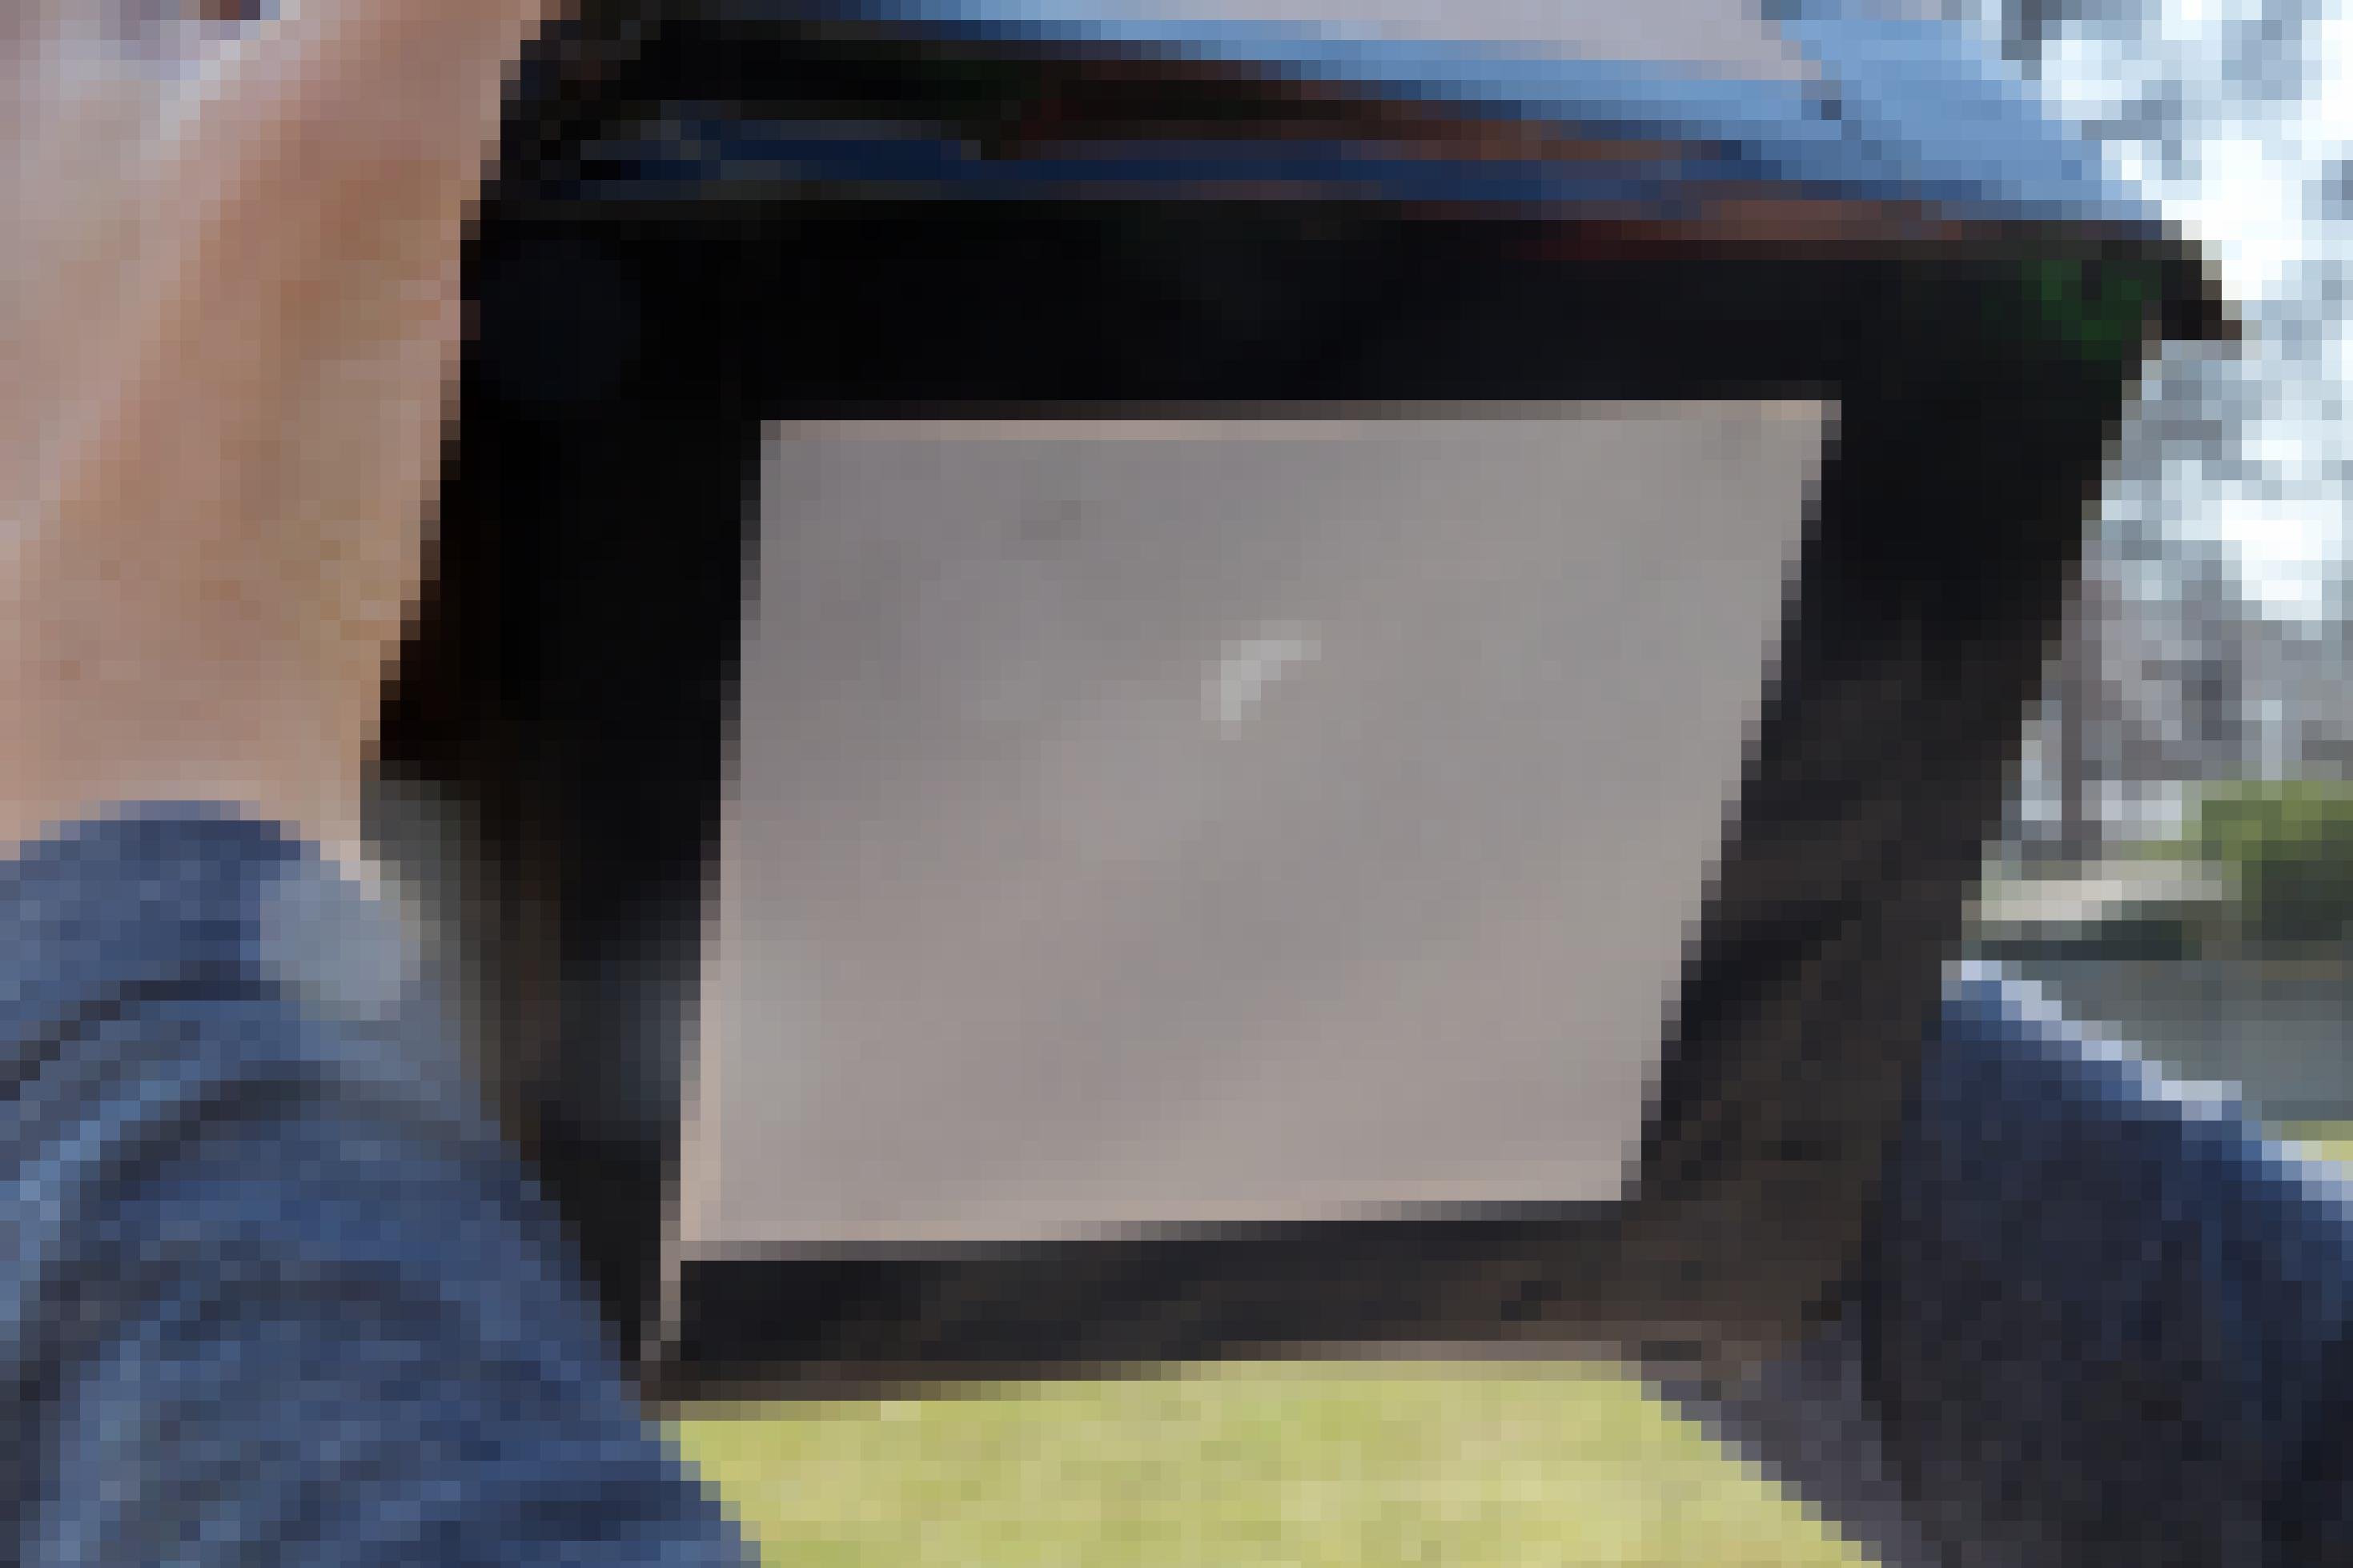 Zu sehen ist ein schwarzer Rahmen mit einer helleren Projektionsfläche, auf die die partiell verdunkelte Sonnenscheibe projiziert wird.